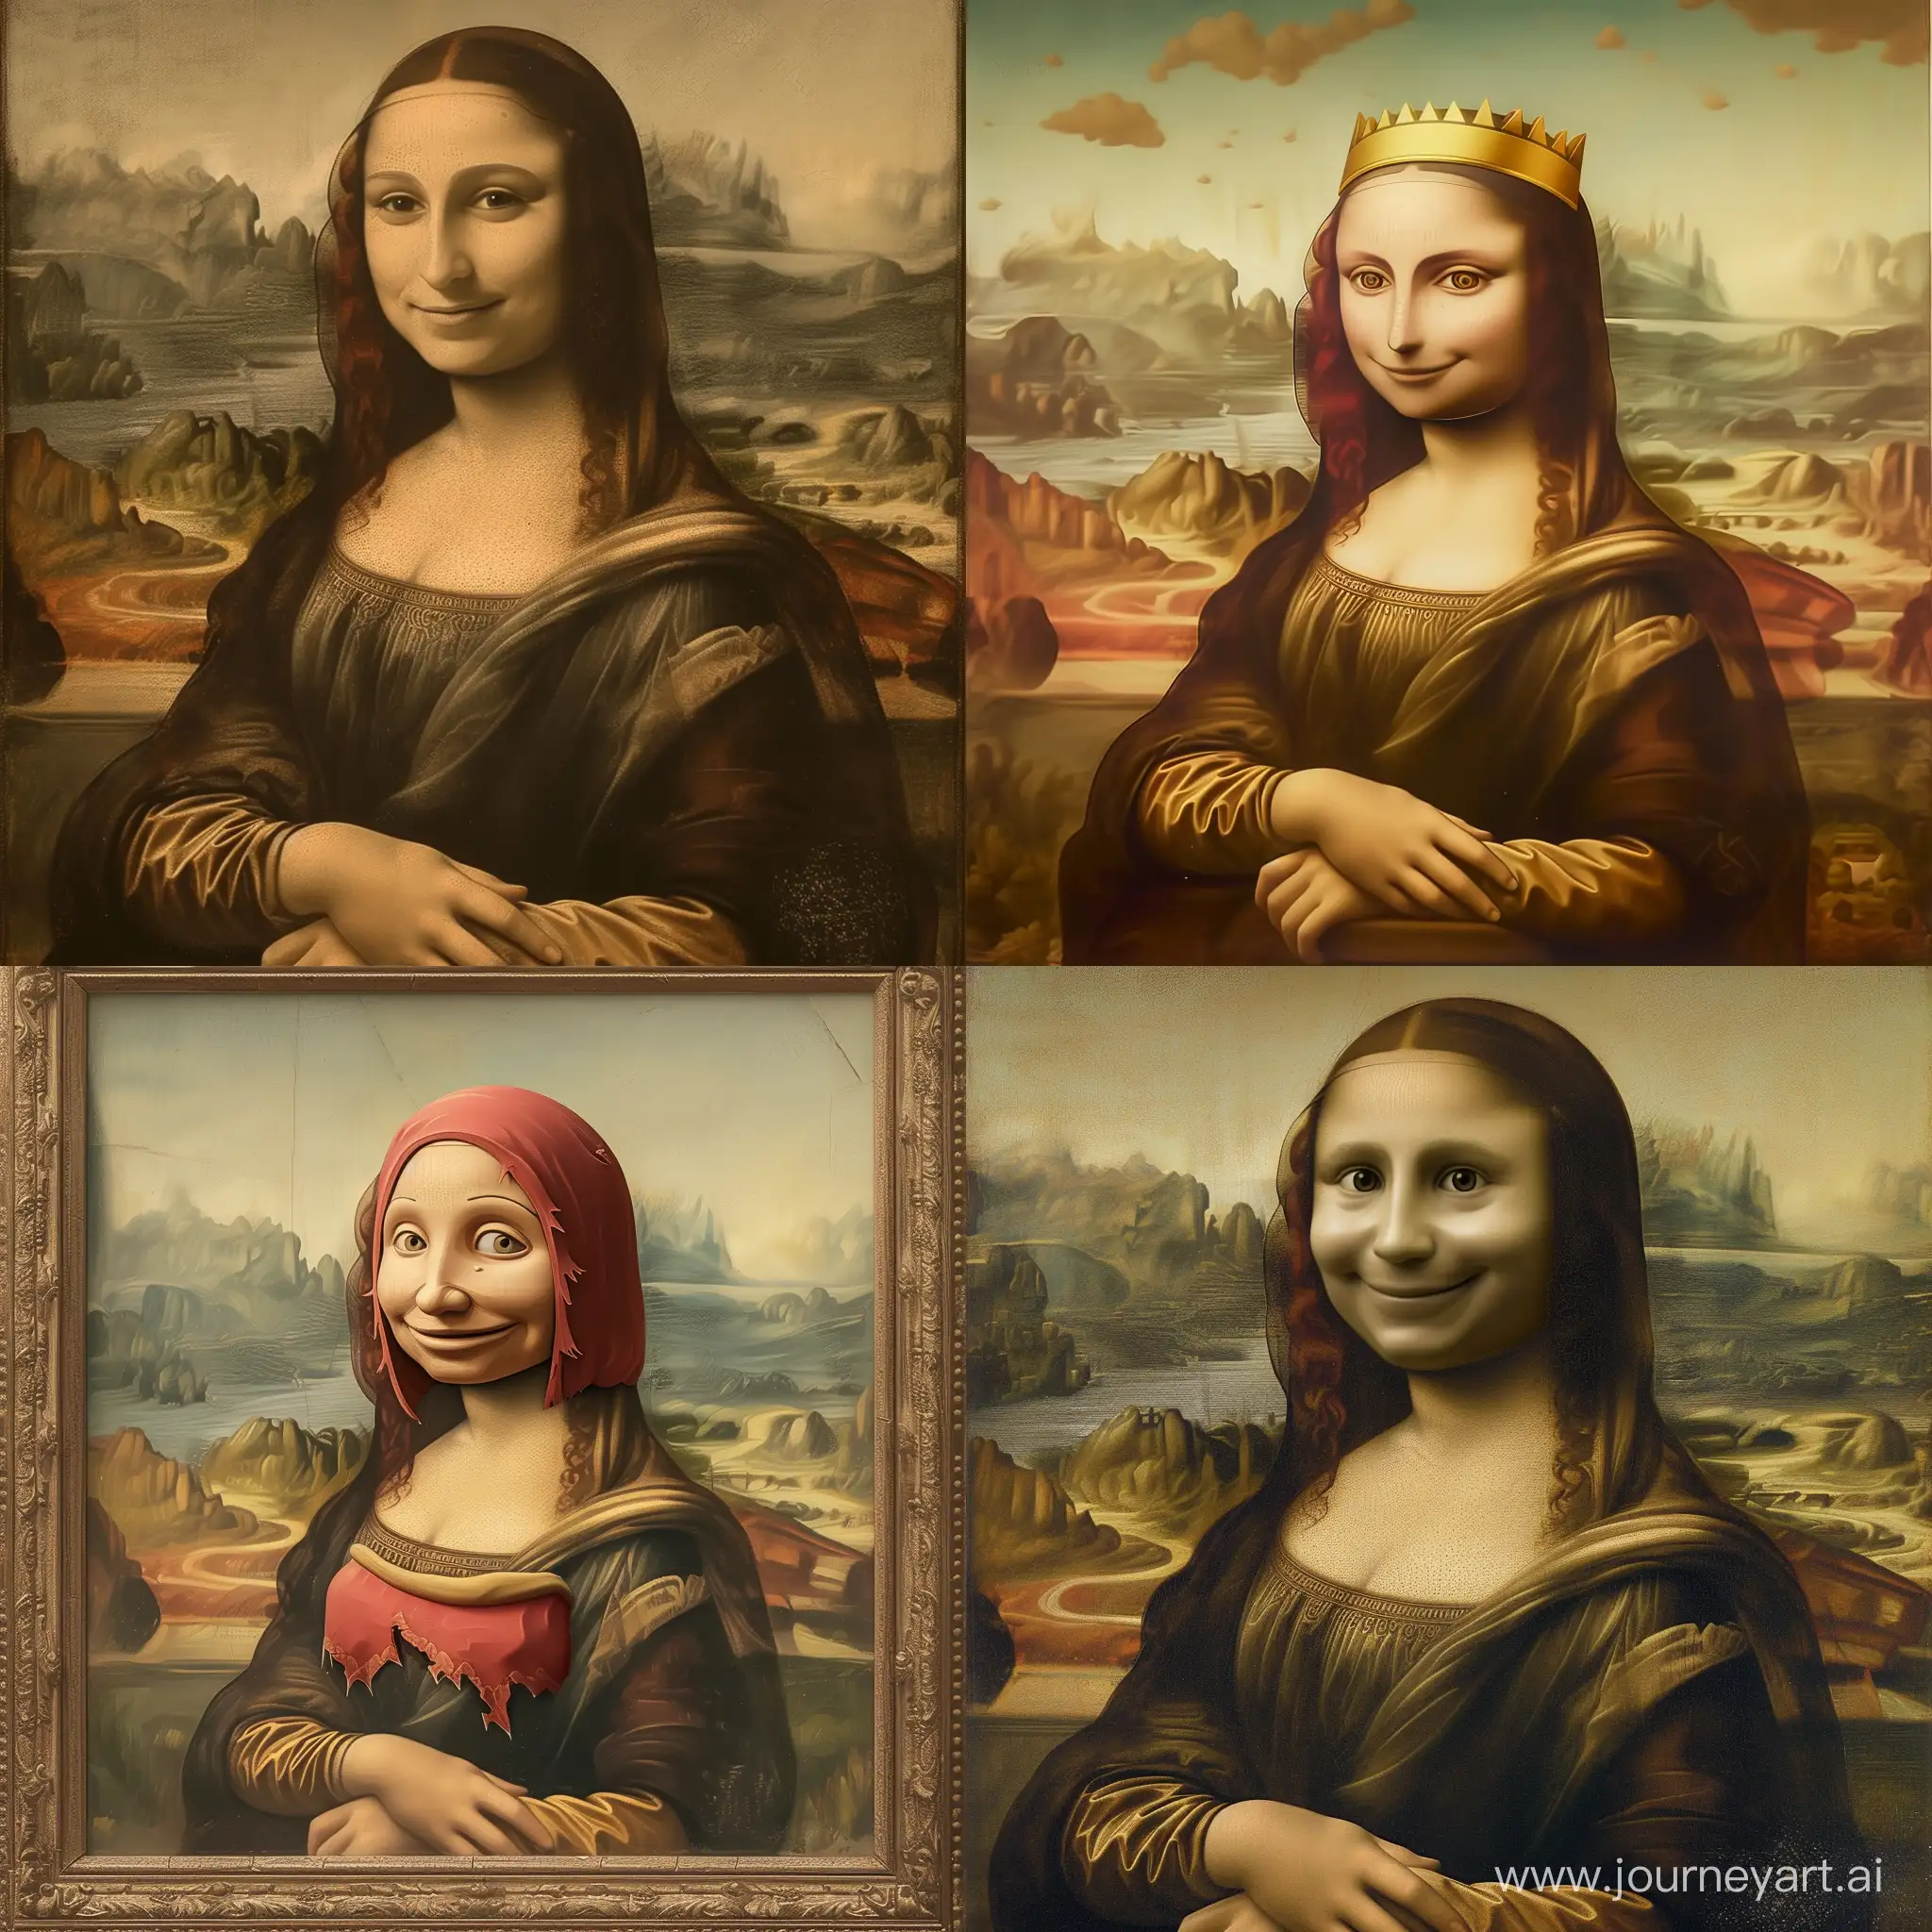 Mona-Lisa-Portrait-with-Clash-Royale-Theme